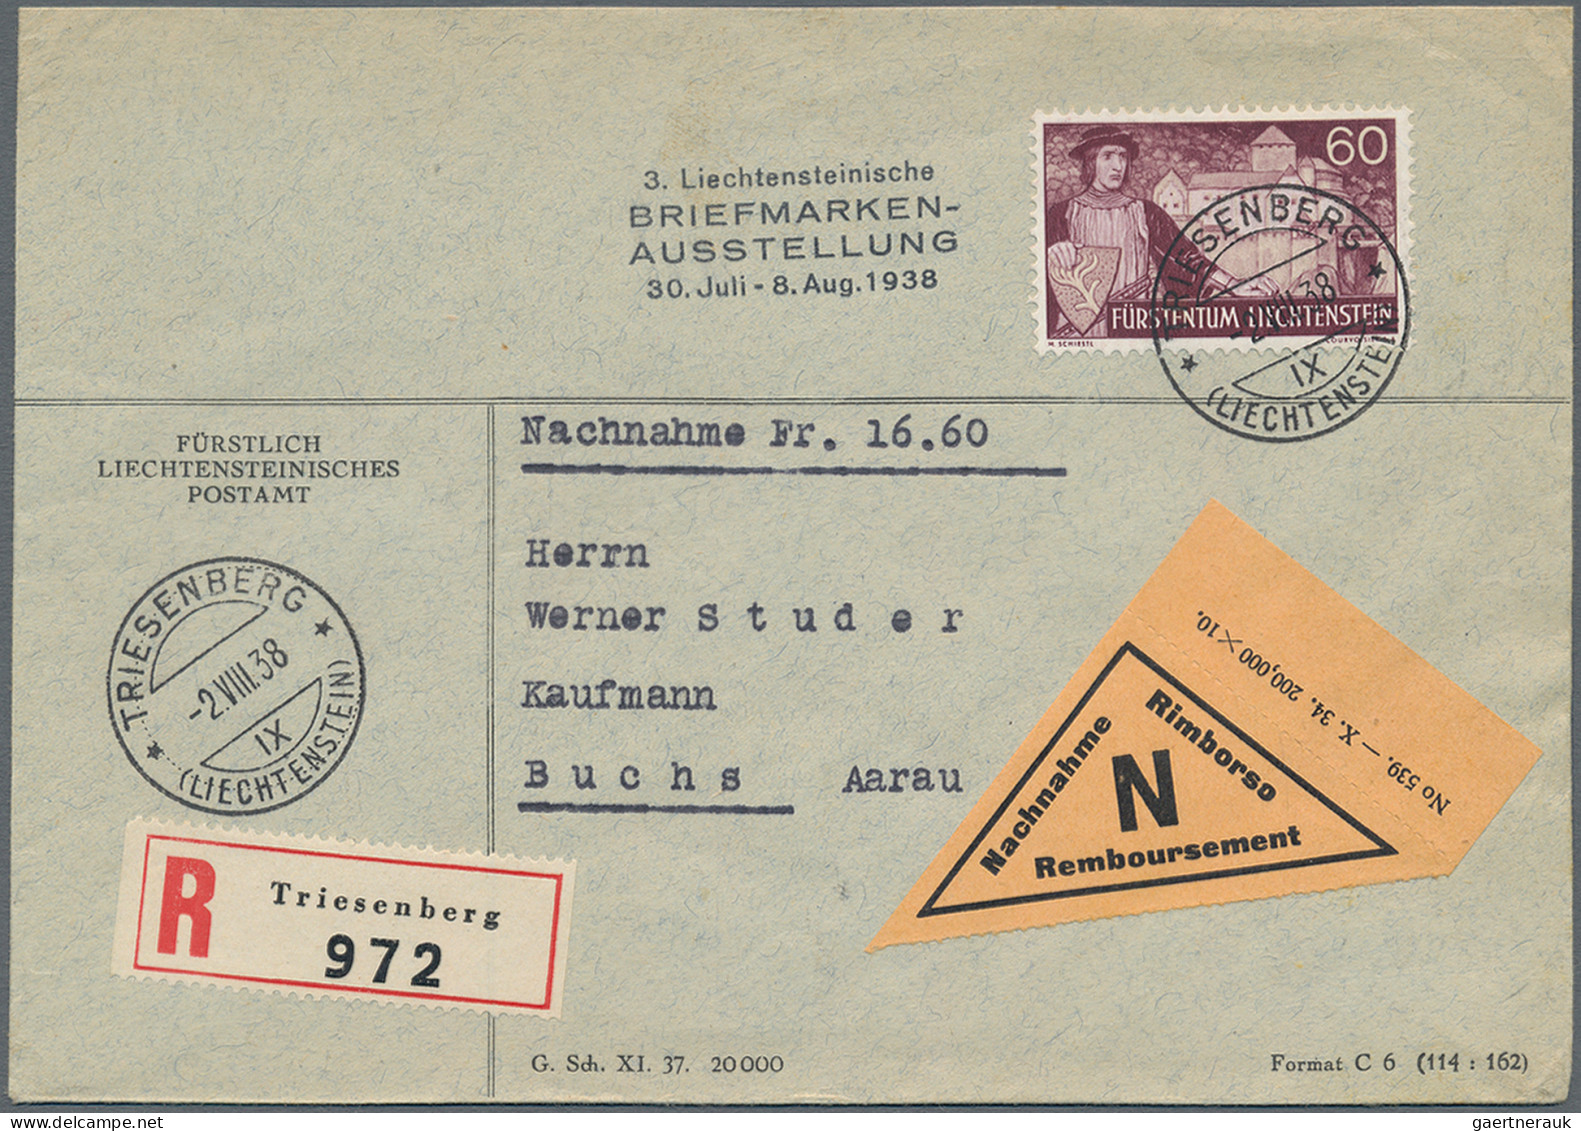 Liechtenstein: 1937, sauberes Lot mit 36 Briefen und Karten der Schiestl-Freimar